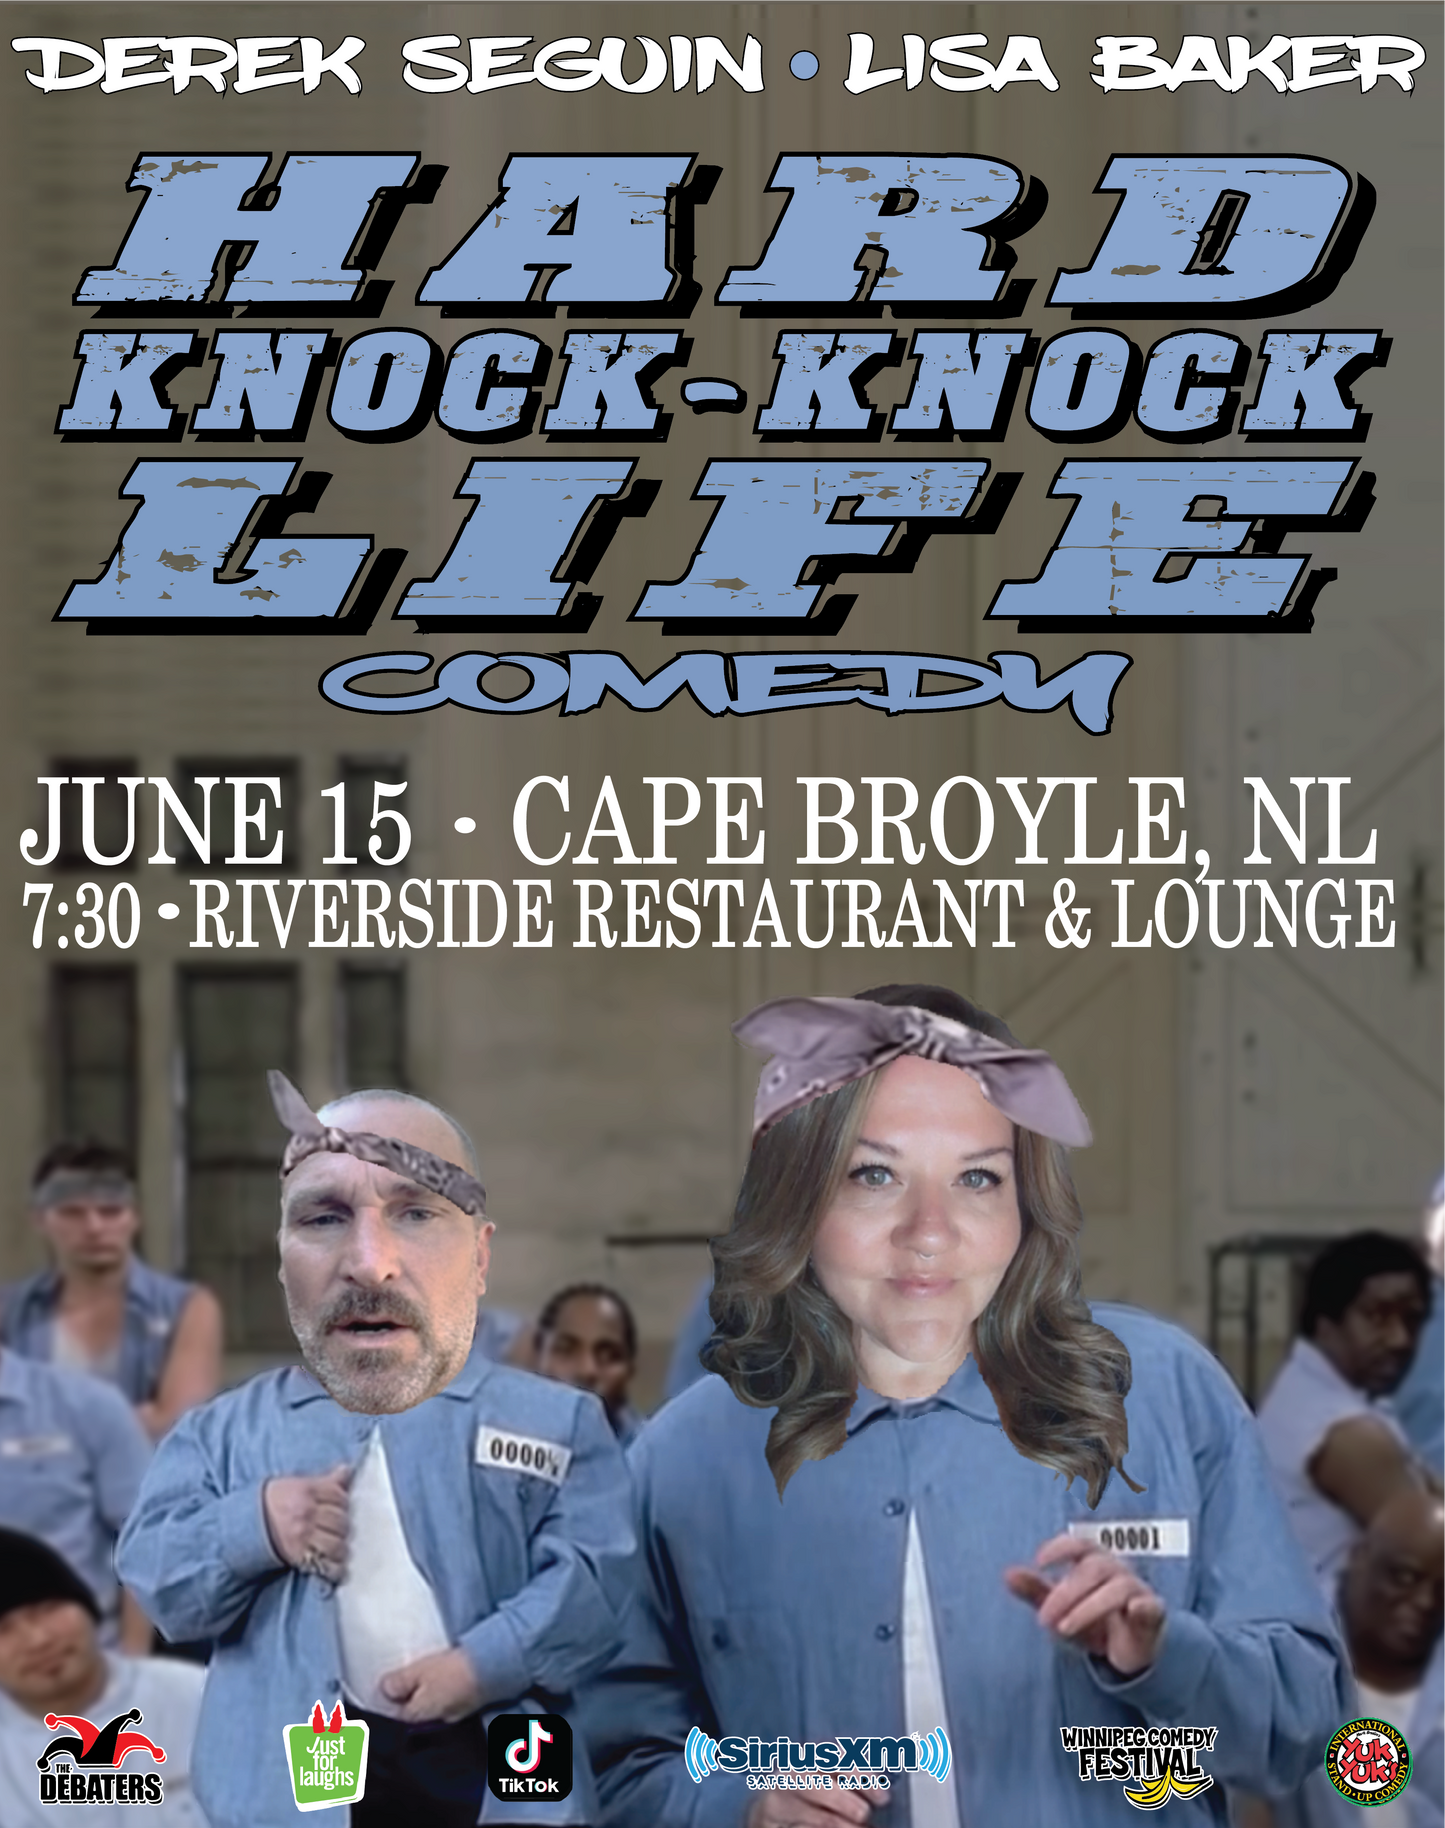 Hard Knock-Knock Life - Cape Broyle June 15